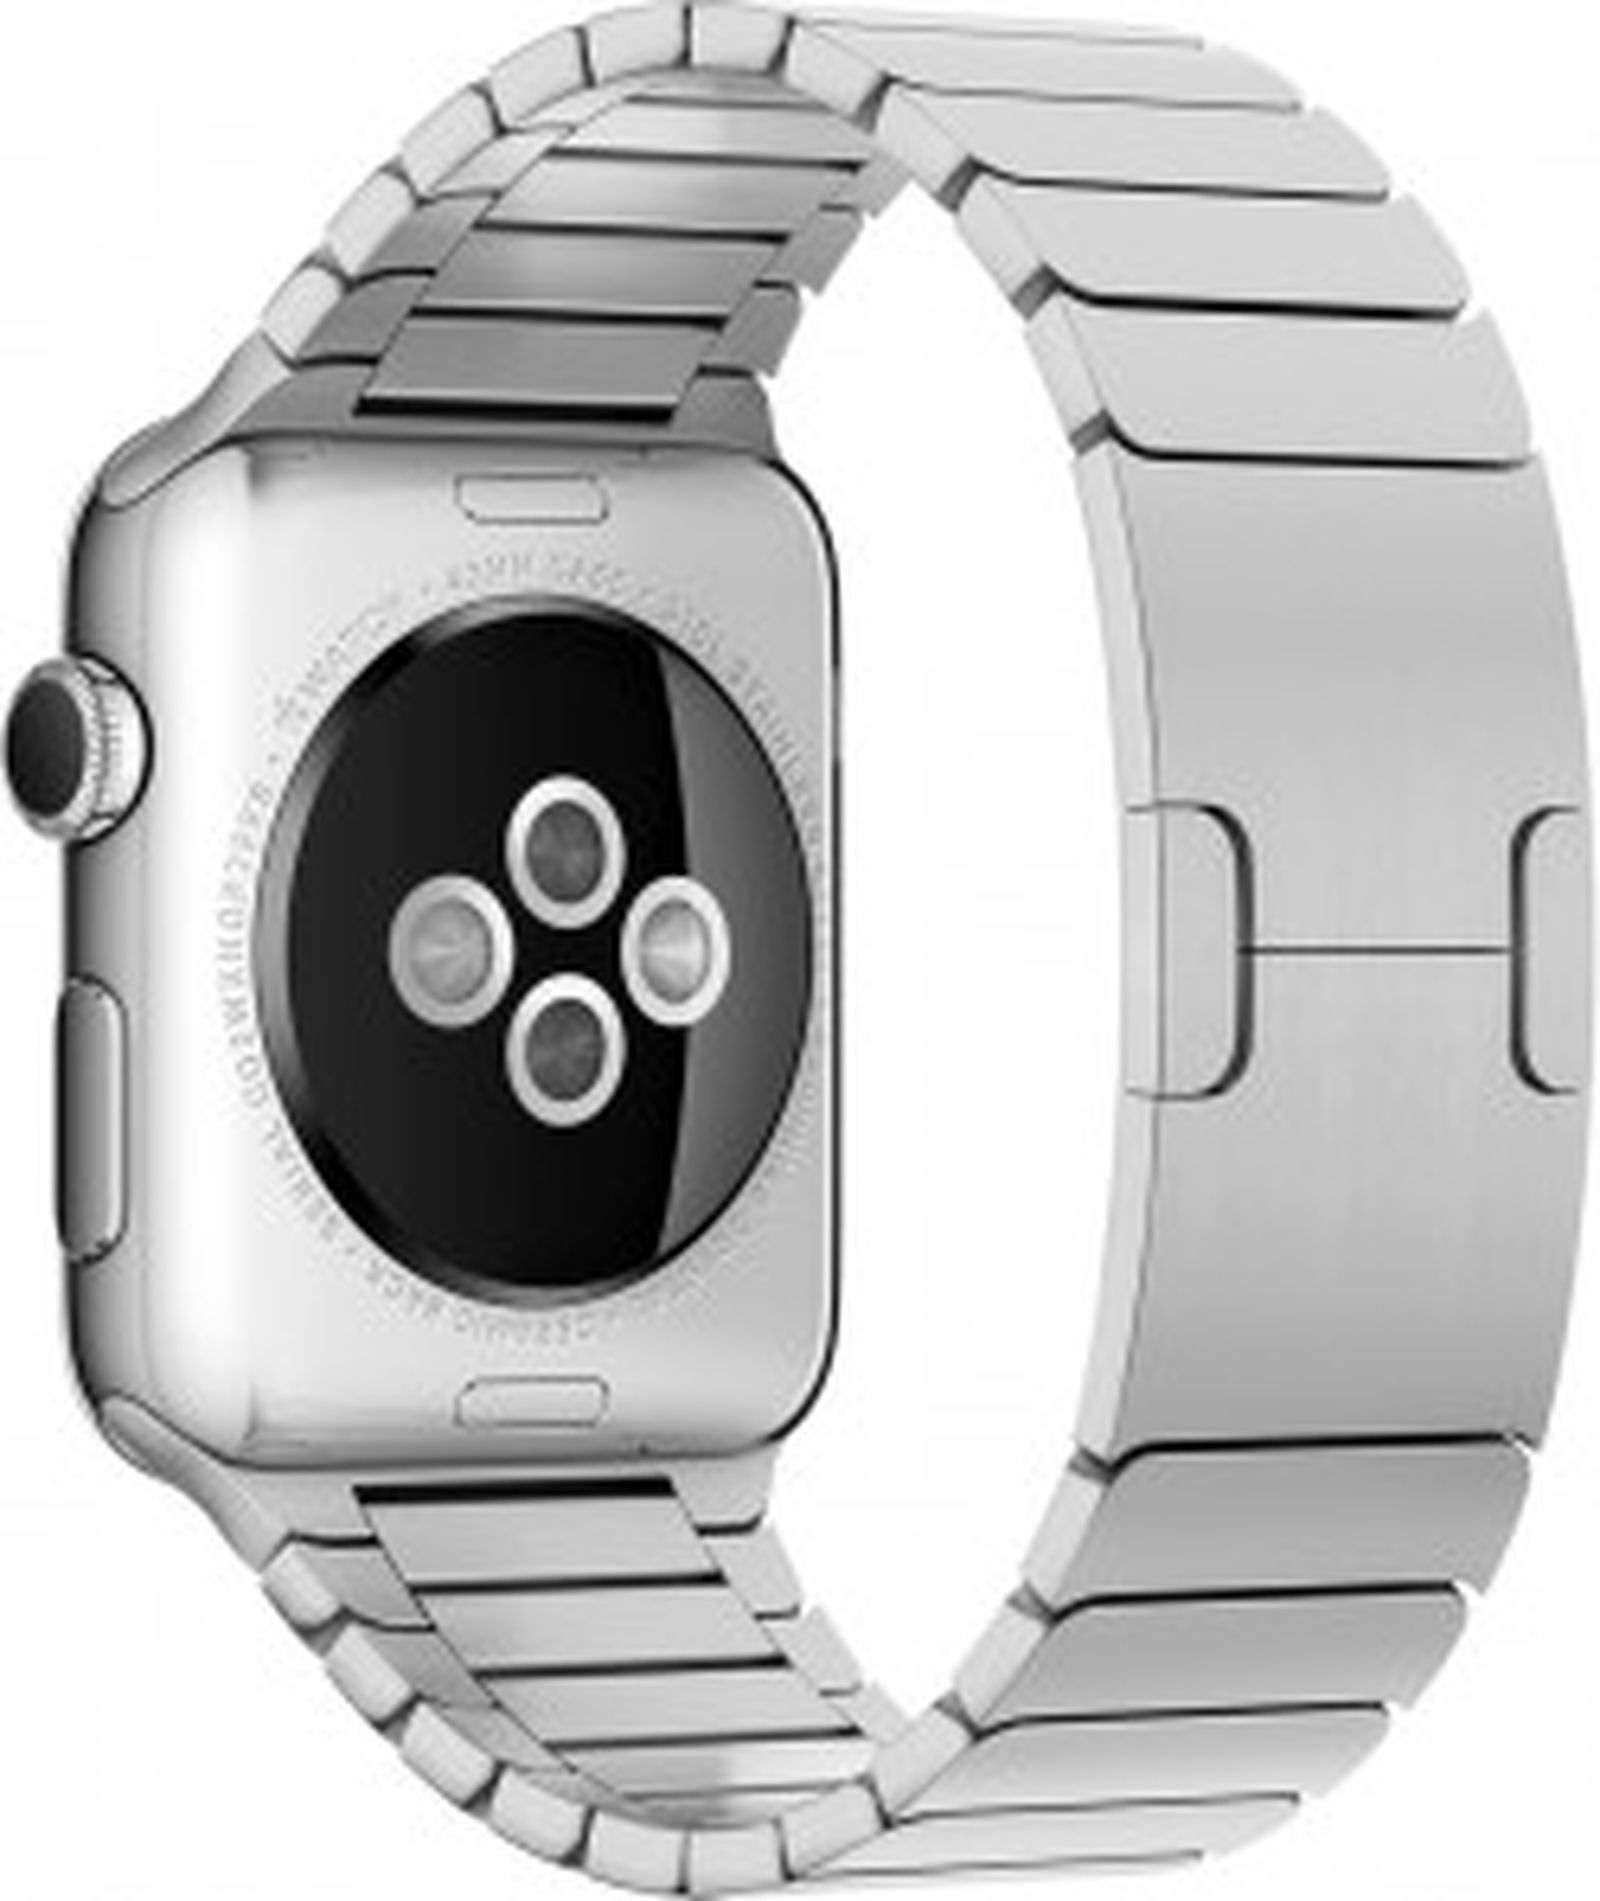 Купить в 7 45. Блочный браслет для эпл вотч 7. Металлический браслет для АПЛ вотч. 42mm Silver link Bracelet Apple. Блочный браслет для Apple watch 44mm.